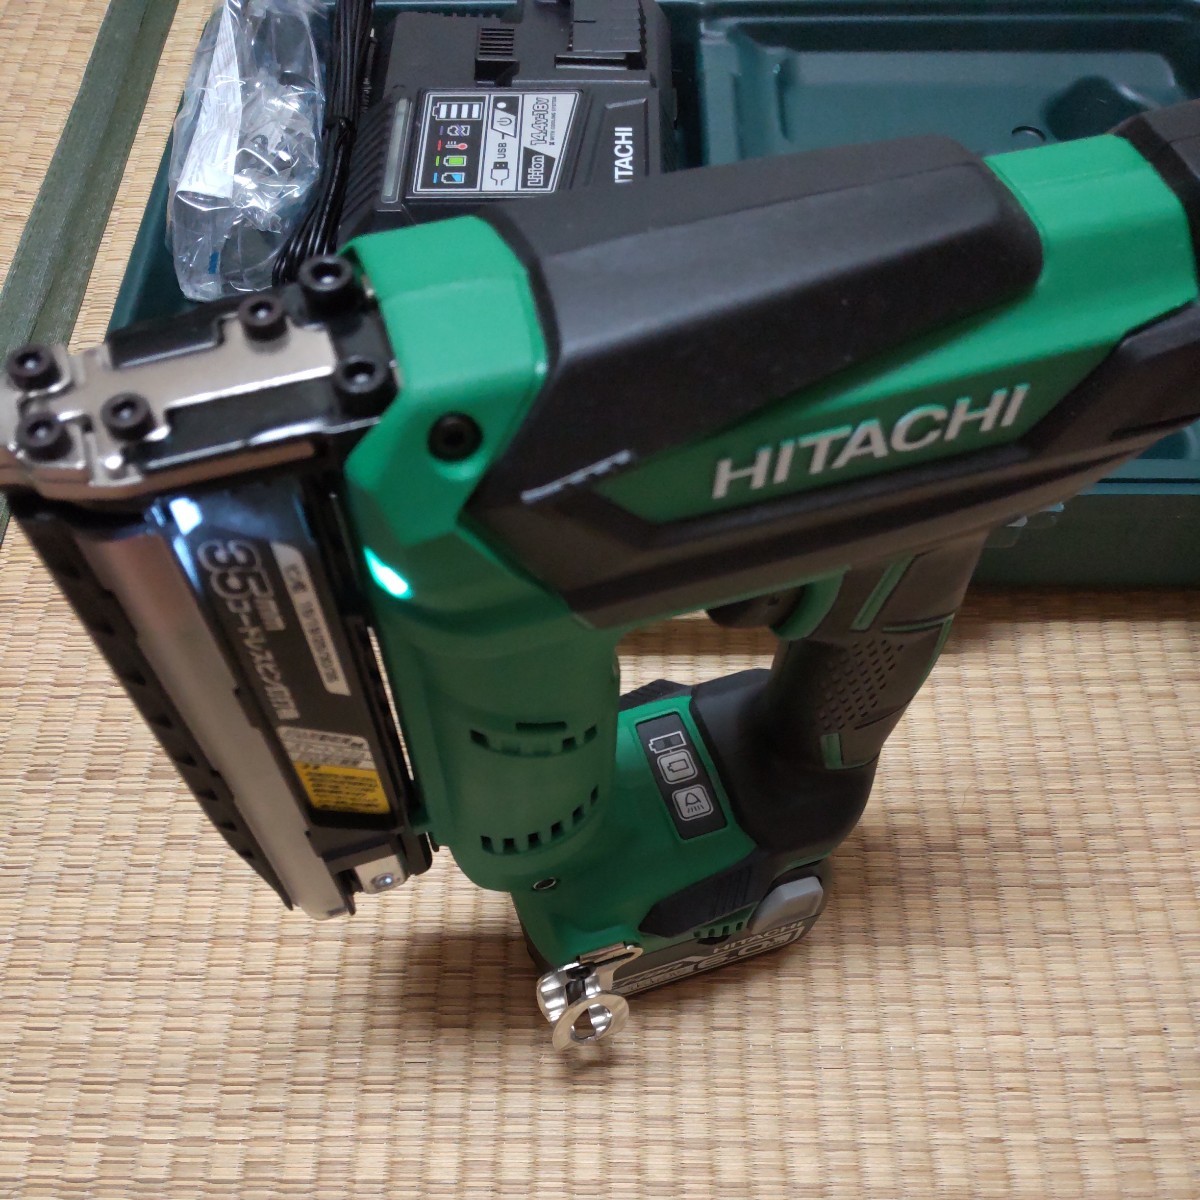  Hitachi высокий ko-ki беспроводной булавка гвоздезабивной пистолет NP14DSAL 6Ah аккумулятор комплект включая доставку!